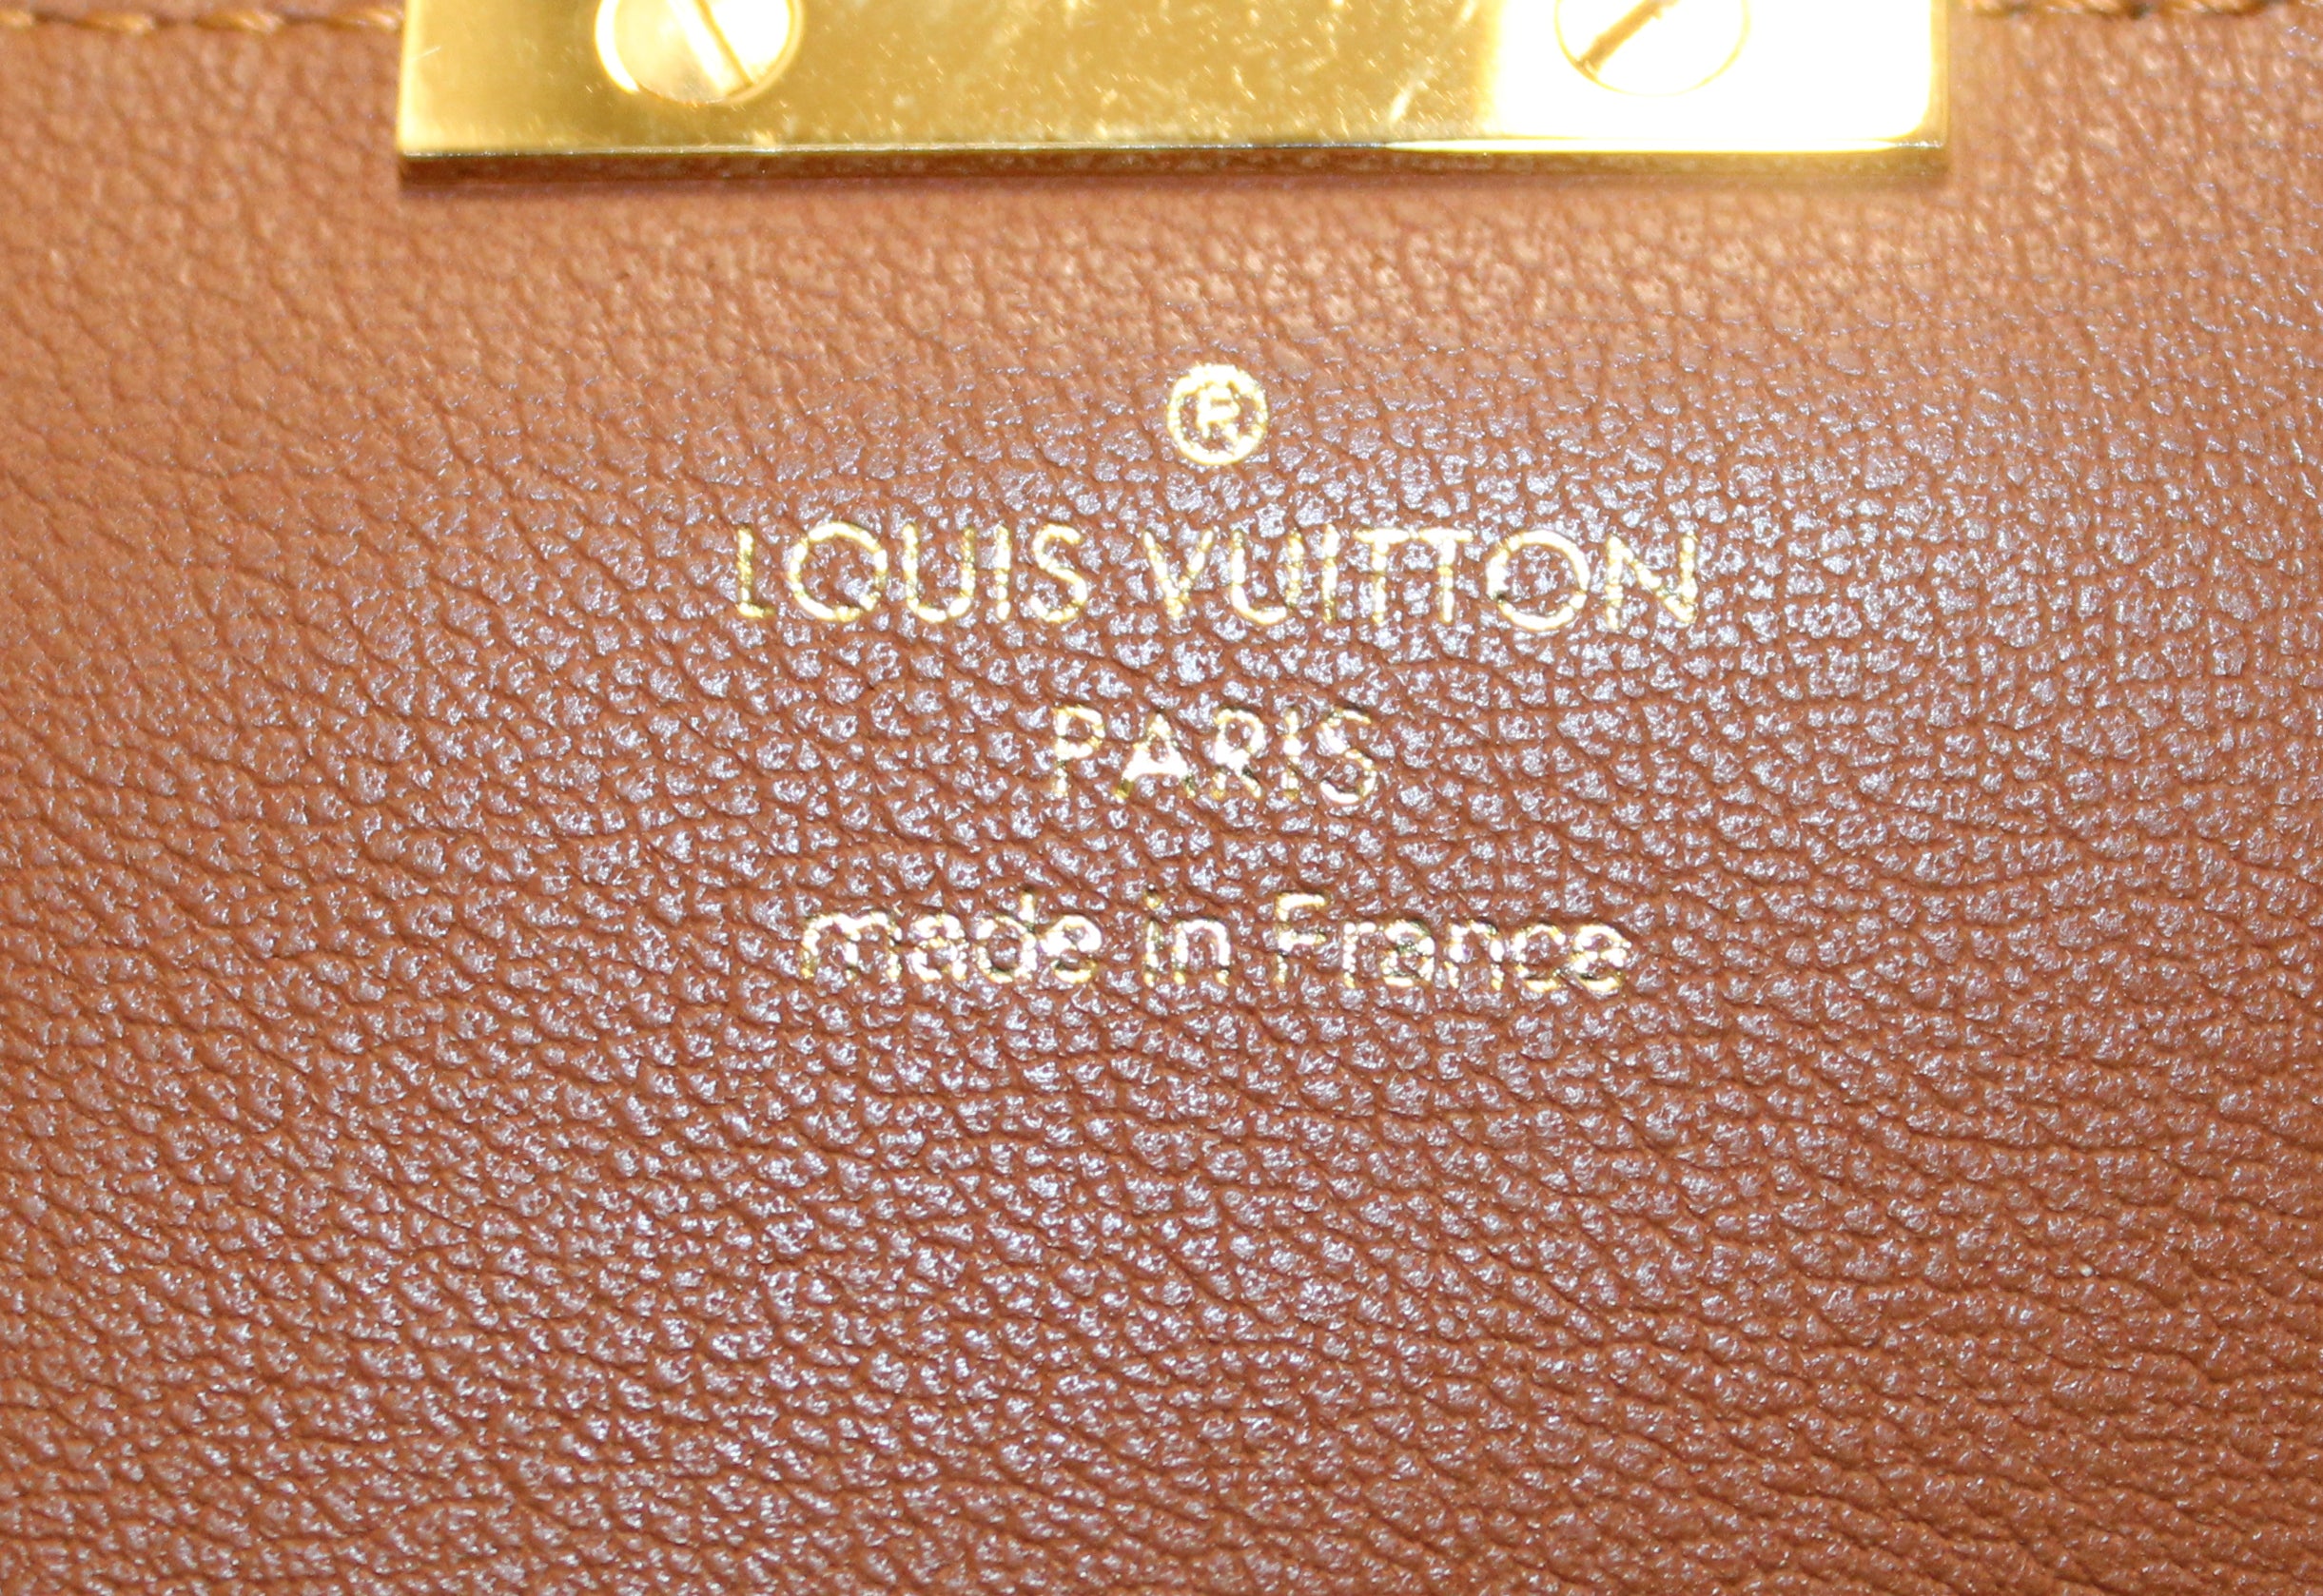 Louis Vuitton Champs-Elysées Laser Engraved Monogram Flower Card